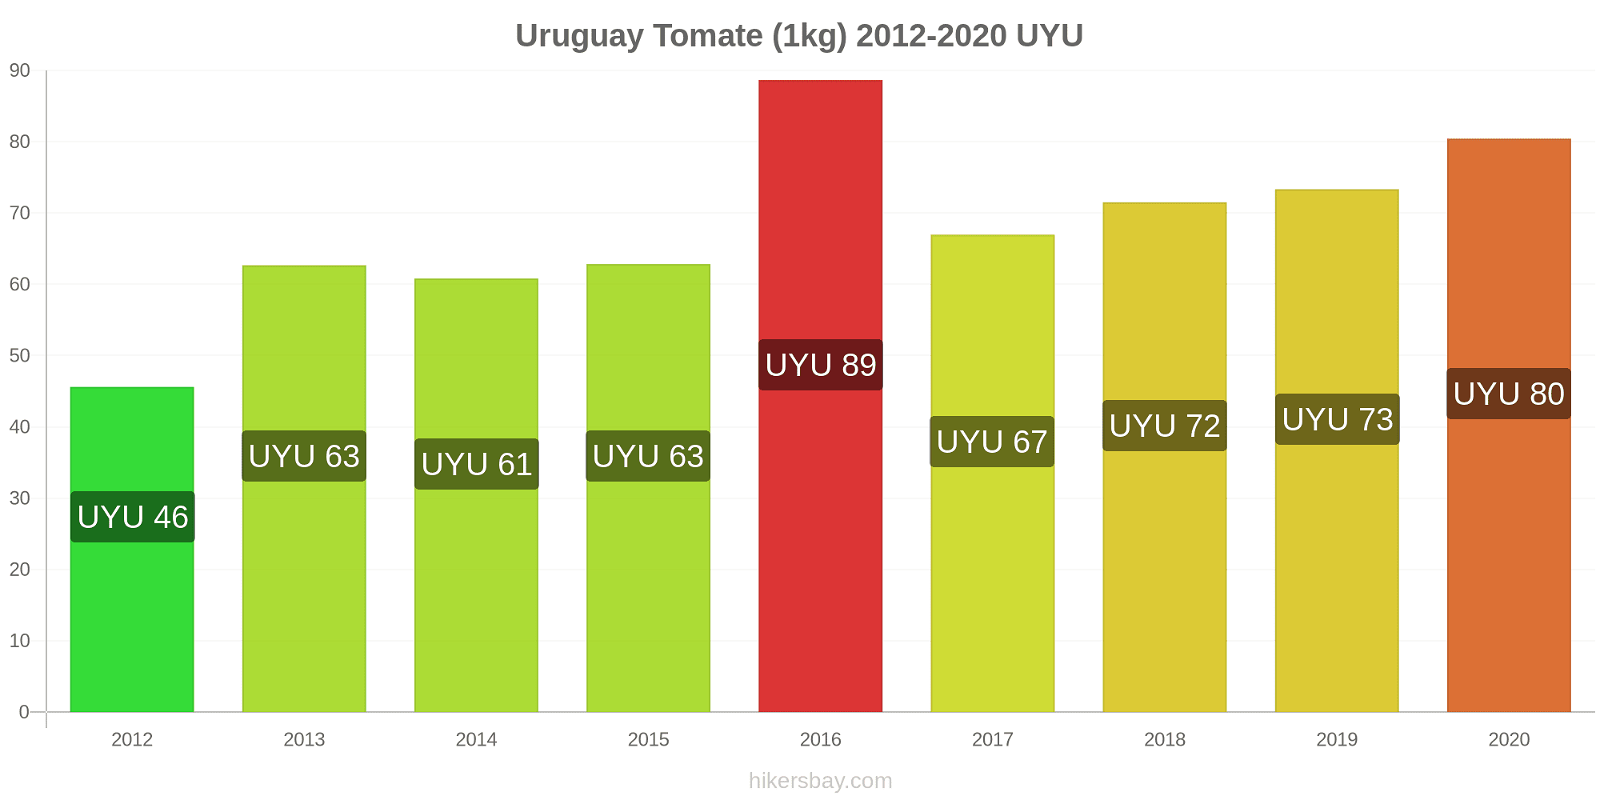 Uruguay changements de prix Tomate (1kg) hikersbay.com